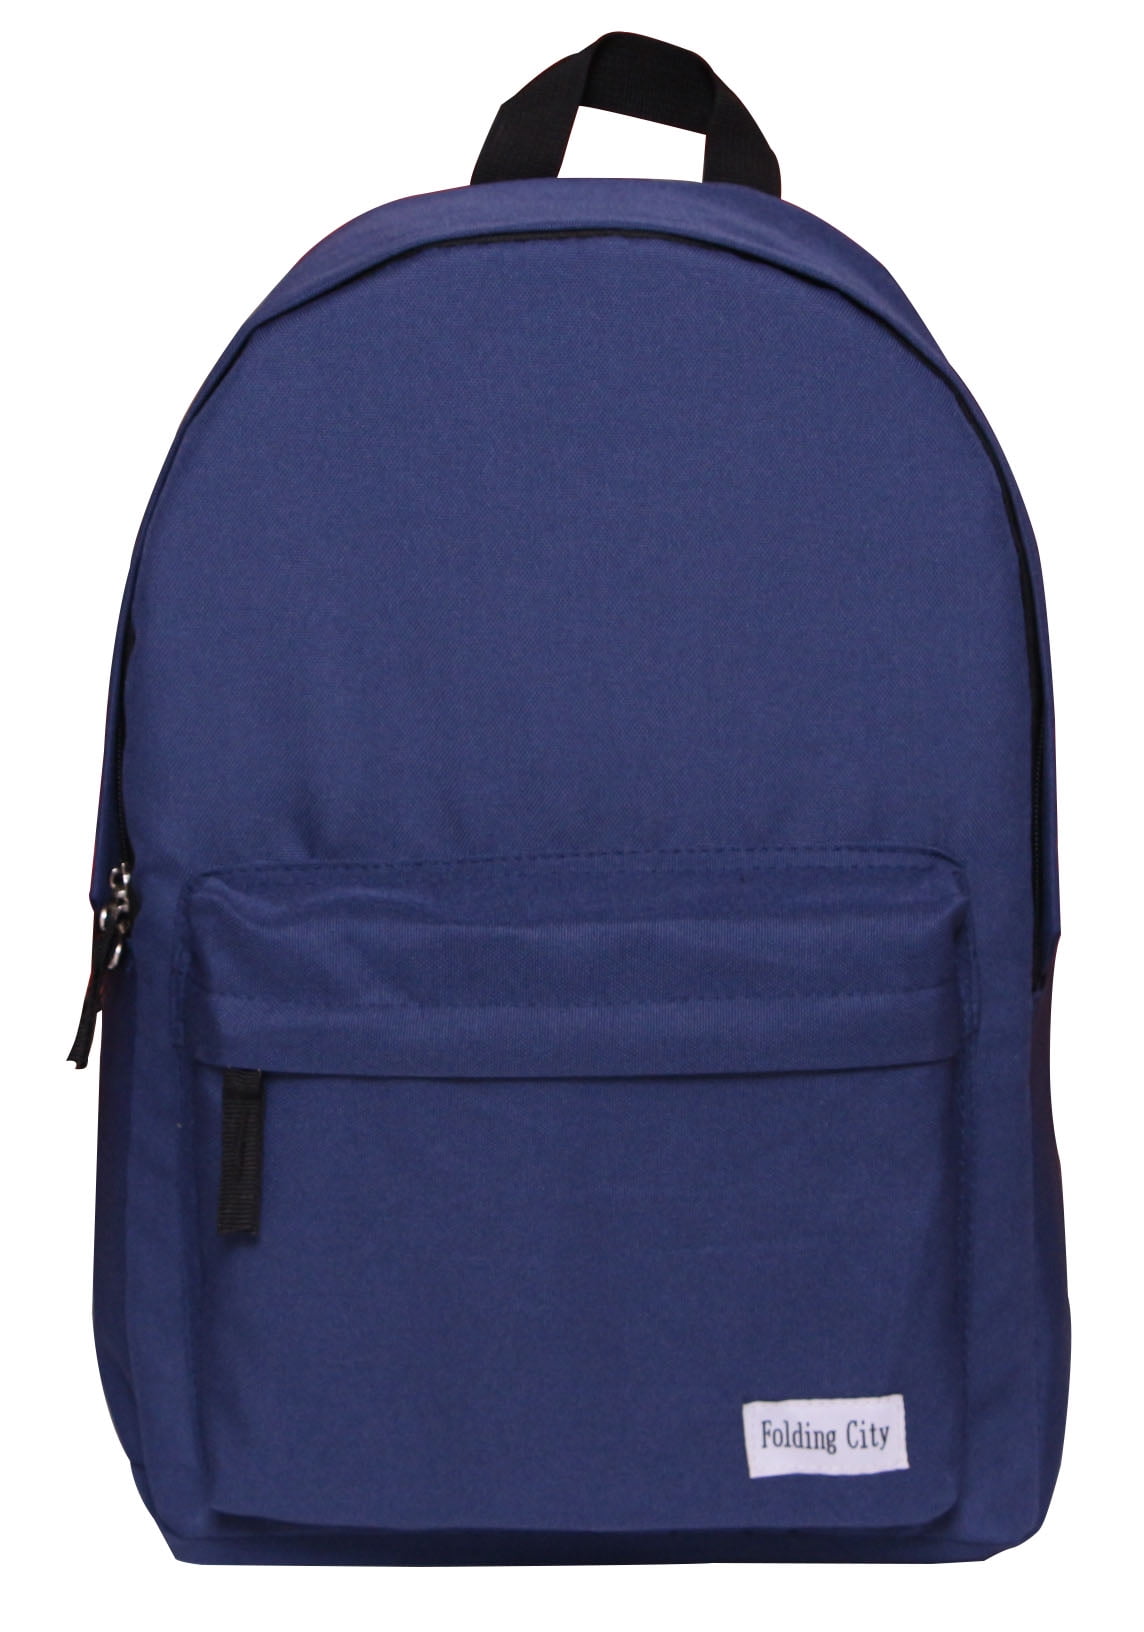 Backpack For Men Teenagers Lightweight Roomy School Bag Deep Blue - www.waterandnature.org